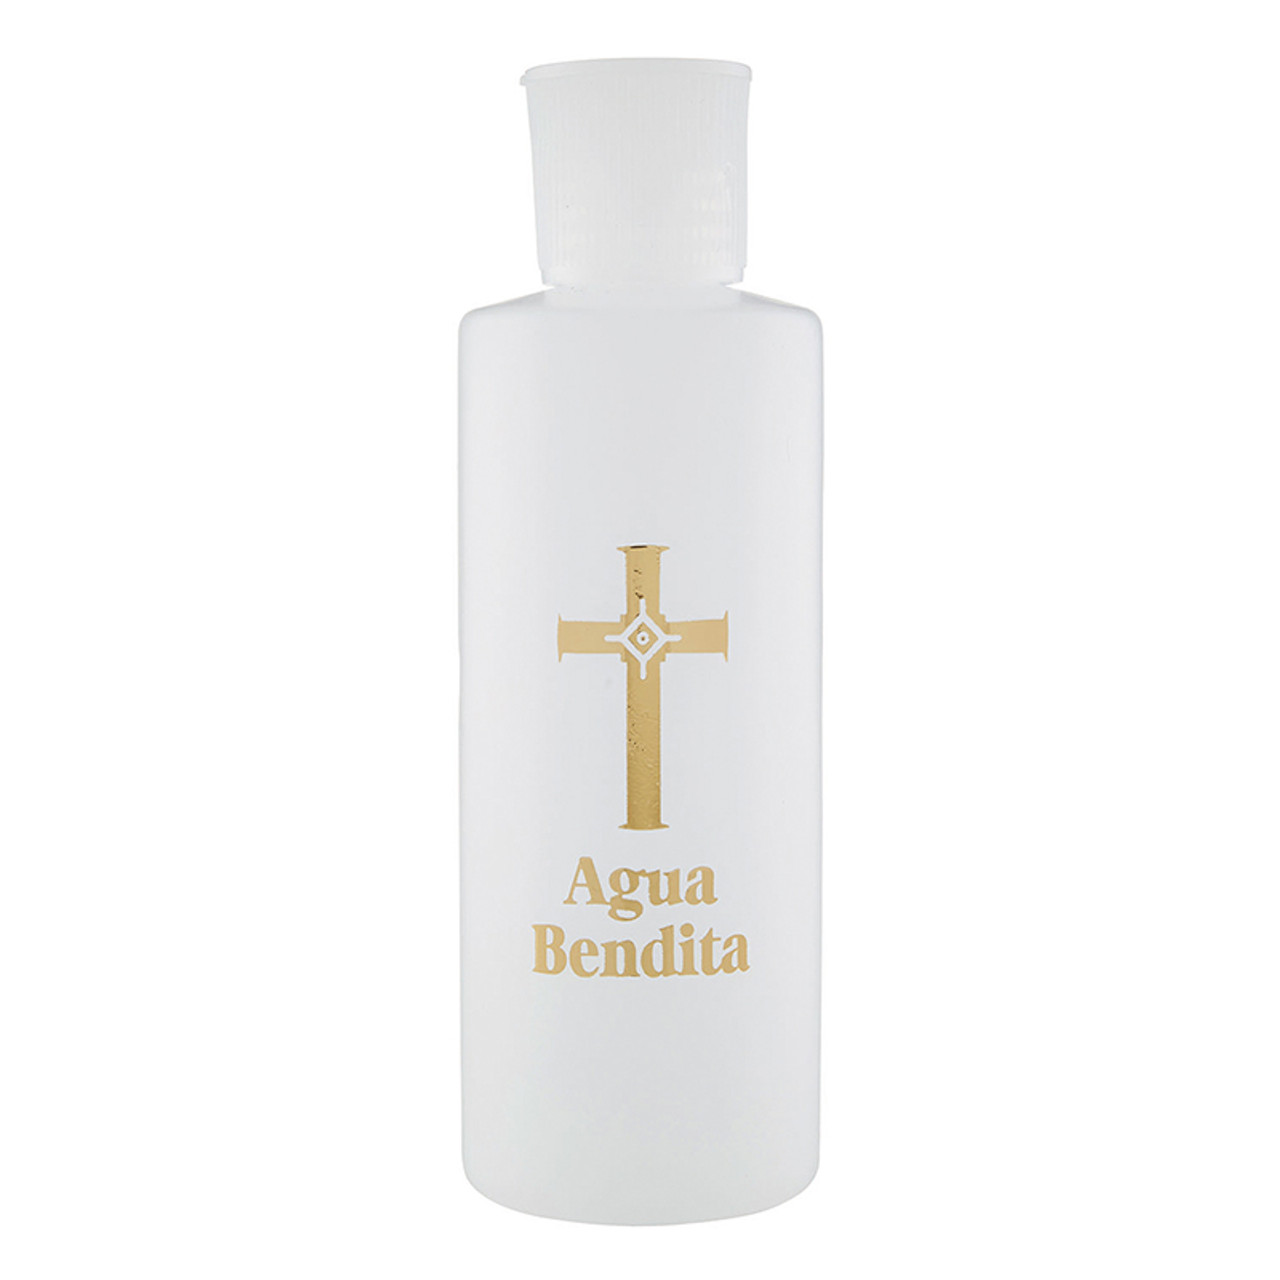 Agua Bendita - Spanish Holy Water Bottles - 24/pk